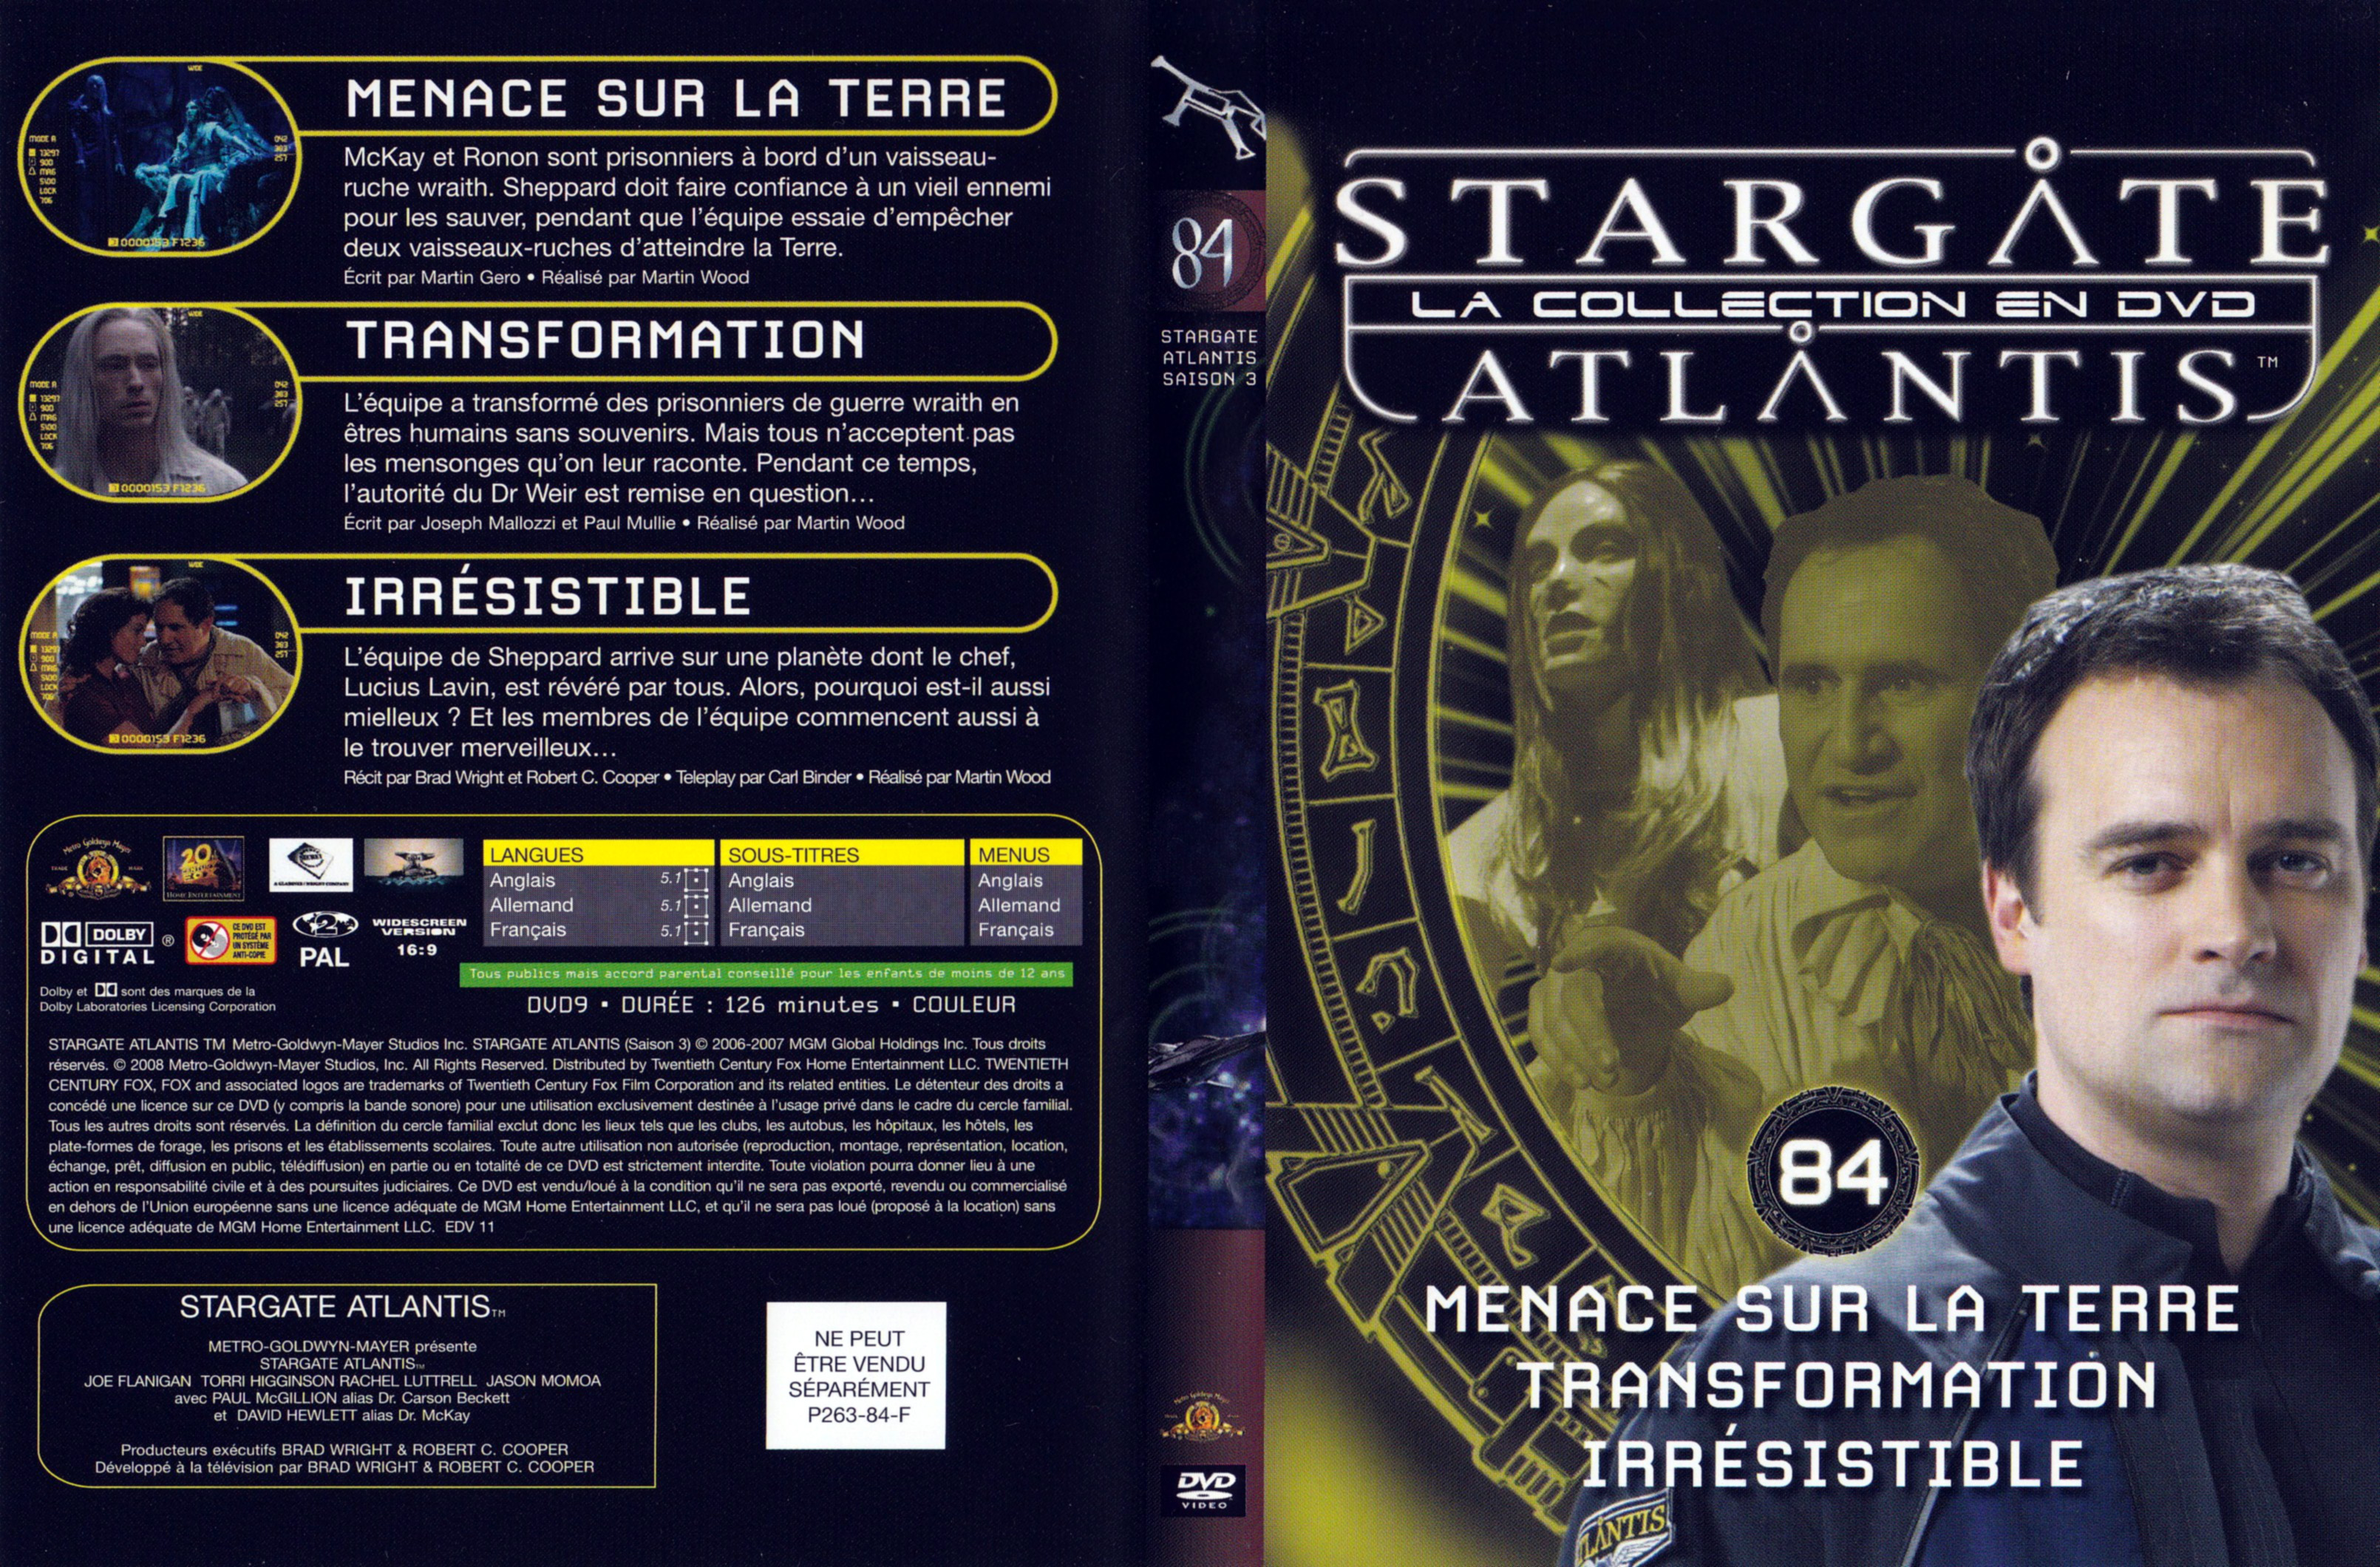 Jaquette DVD Stargate SG1 Atlantis Saison 3 vol 84